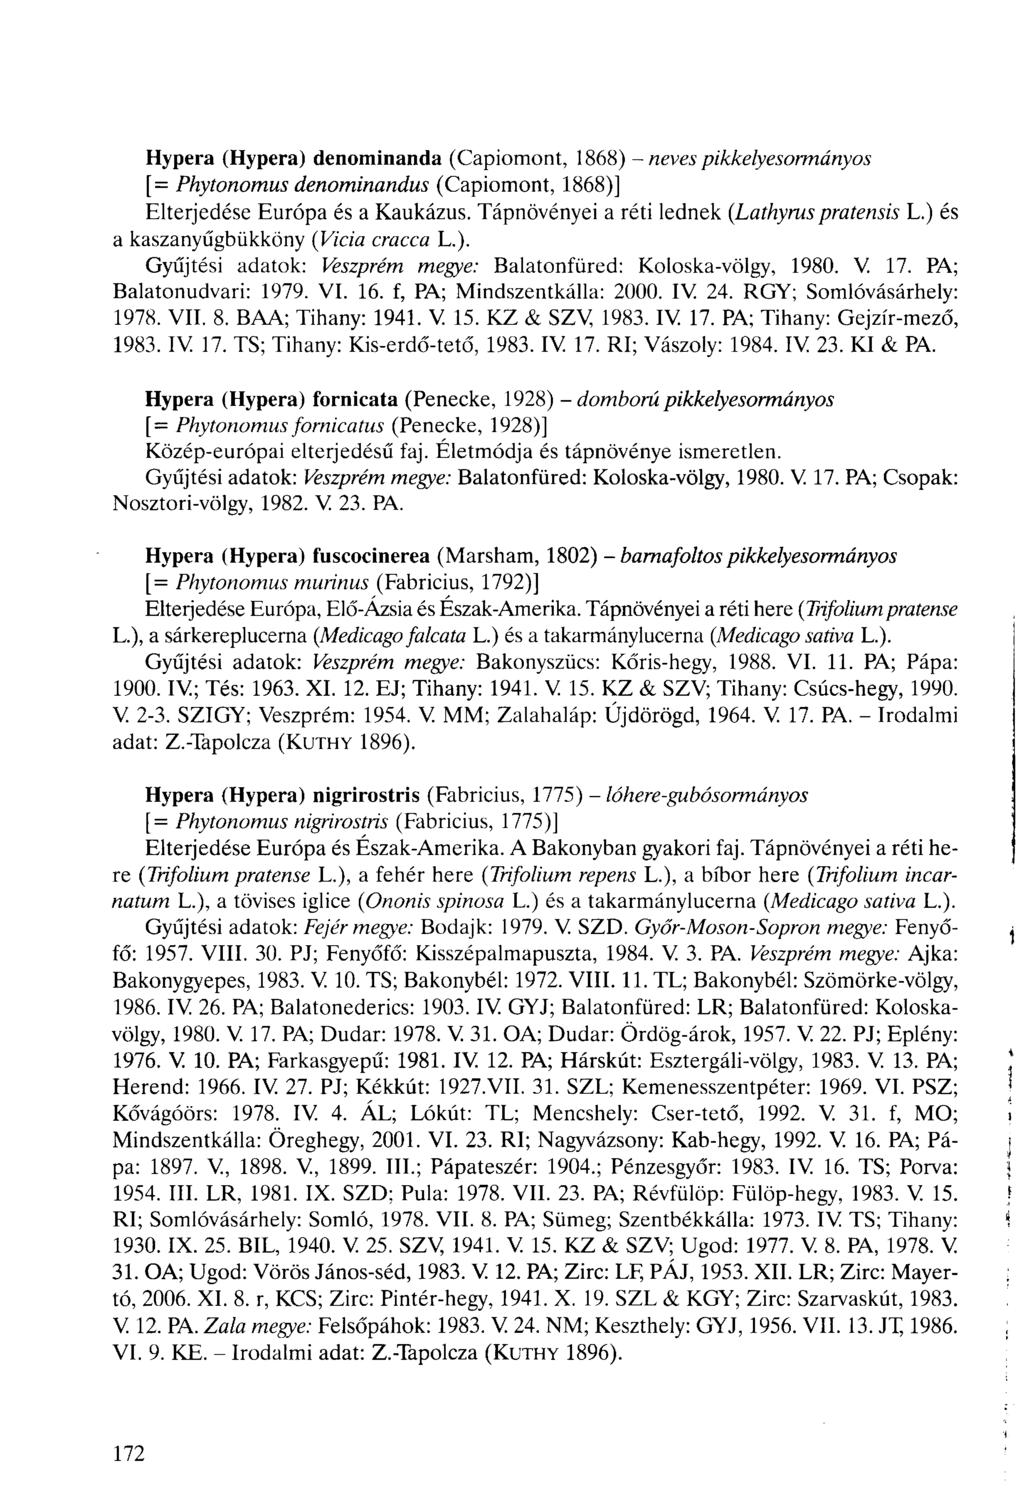 Hypera (Hypera) denominanda (Capiomont, 1868) - neves [= Phytonomus denominandus (Capiomont, 1868)] pikkelyesormányos Elterjedése Európa és a Kaukázus. Tápnövényei a réti lednek (Lathyrus pratensis L.